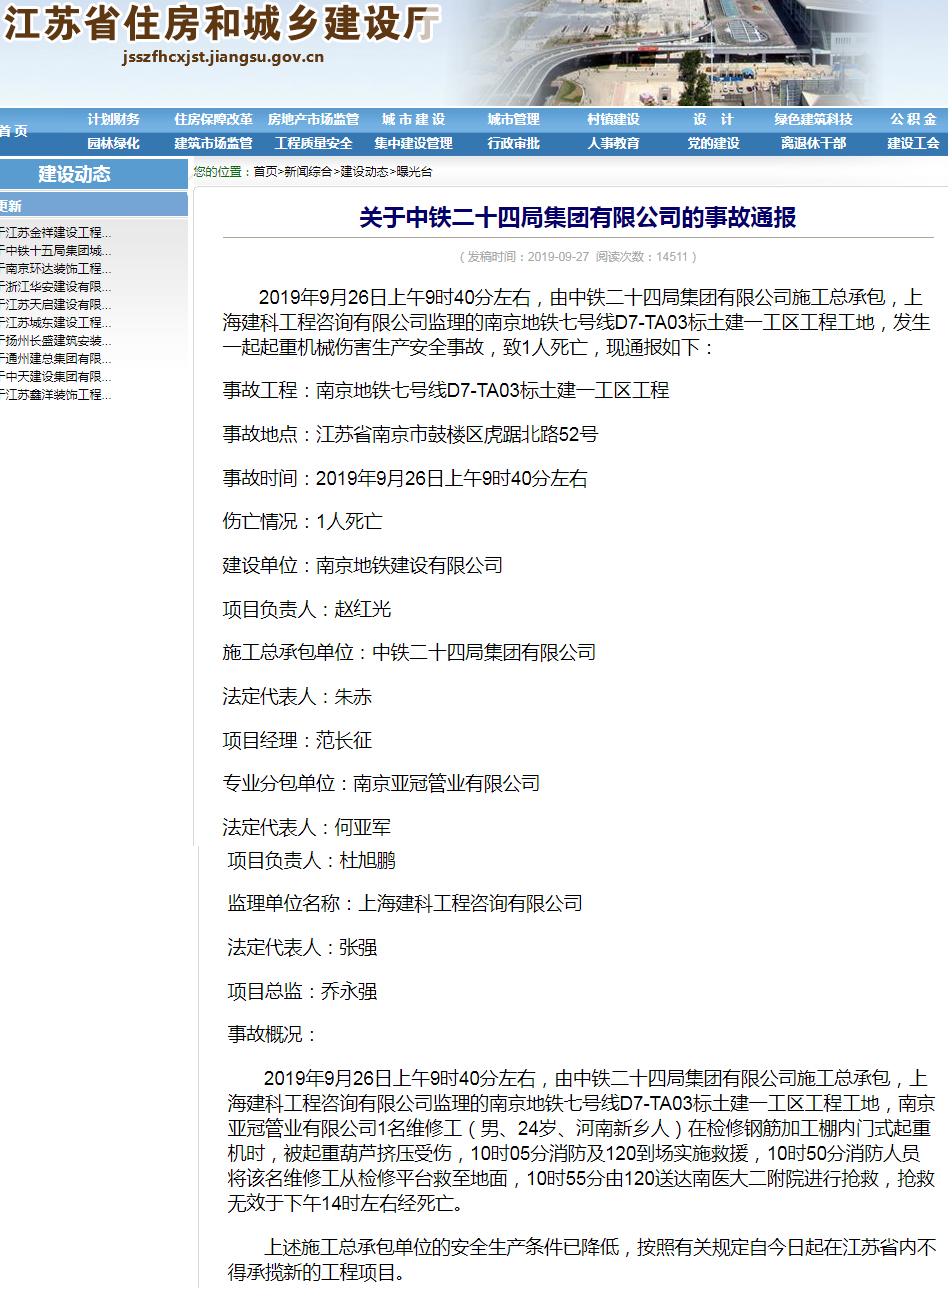 中铁二十四局集团有限公司南京地铁七号线工地发生事故 被禁止在江苏承揽新工程